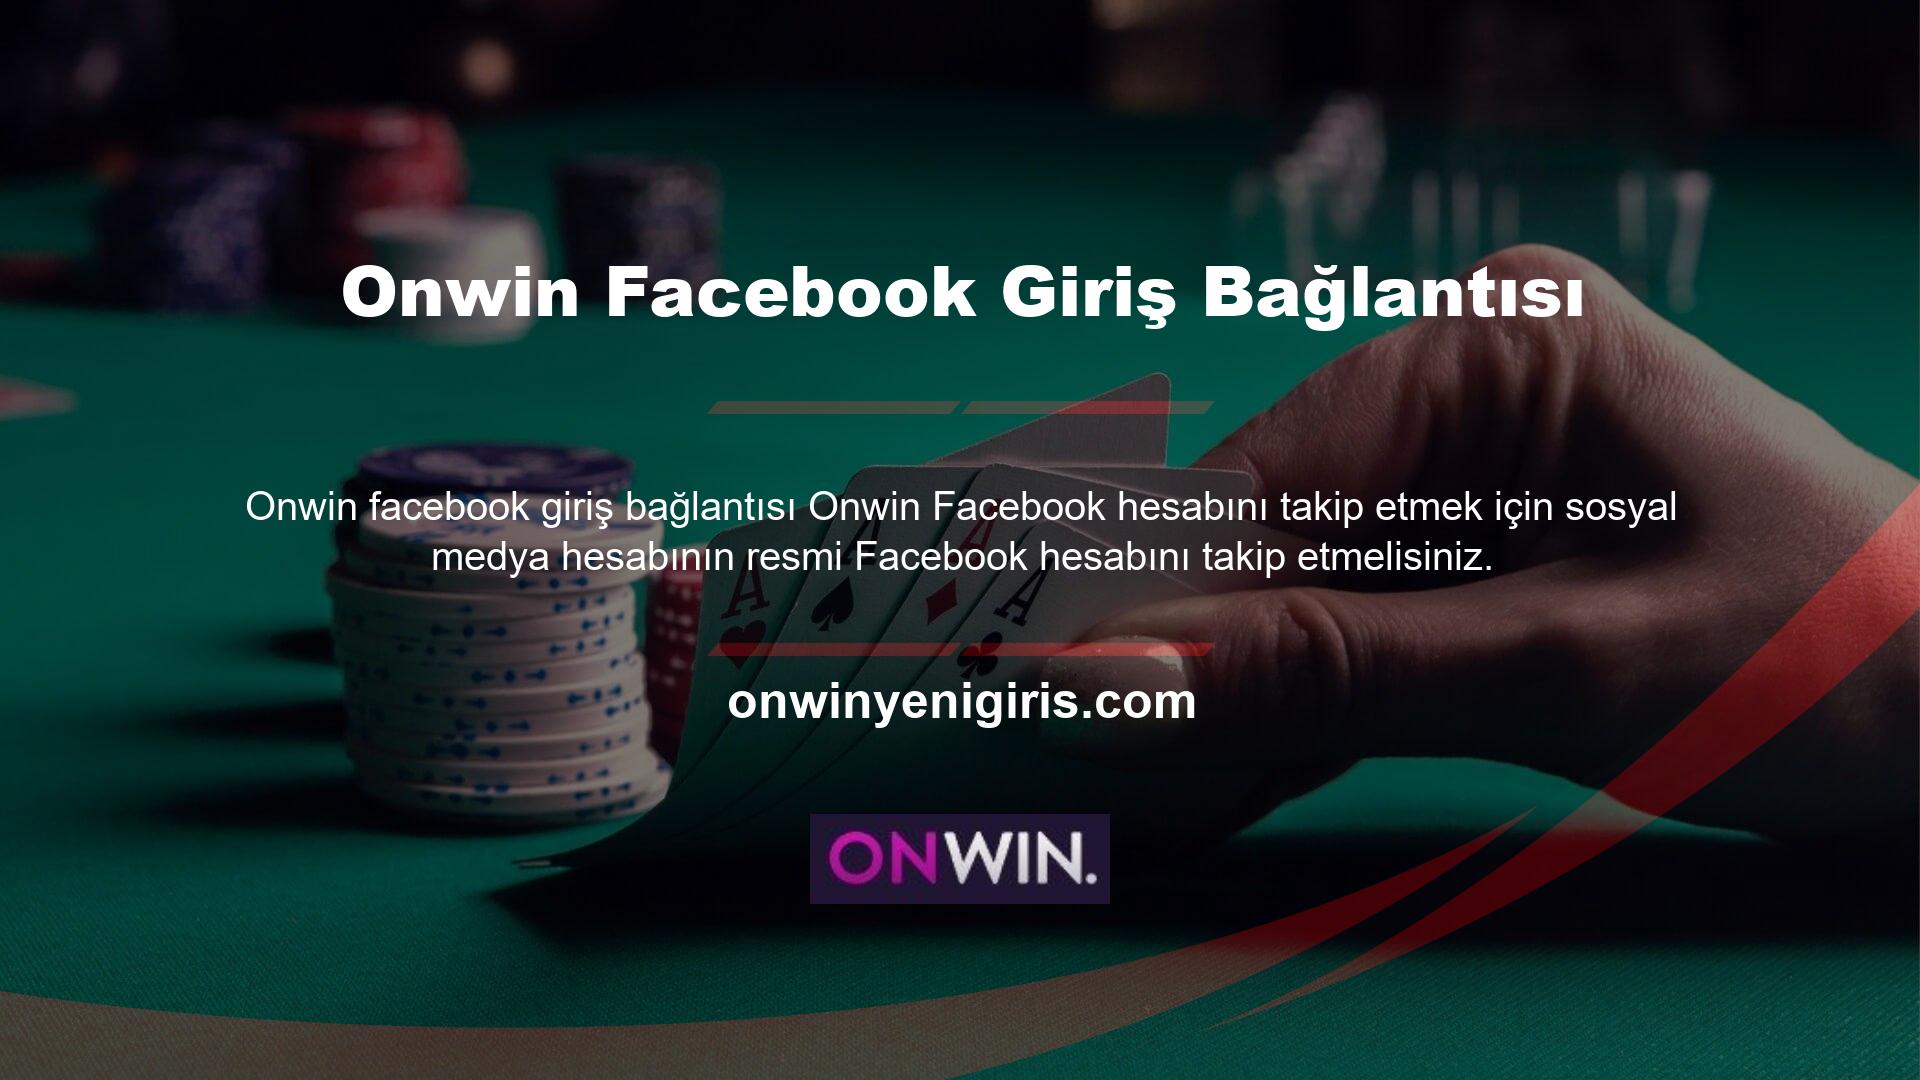 Erişmek için lütfen Onwin Facebook giriş bağlantısını kullanarak yazıya yanıt verin